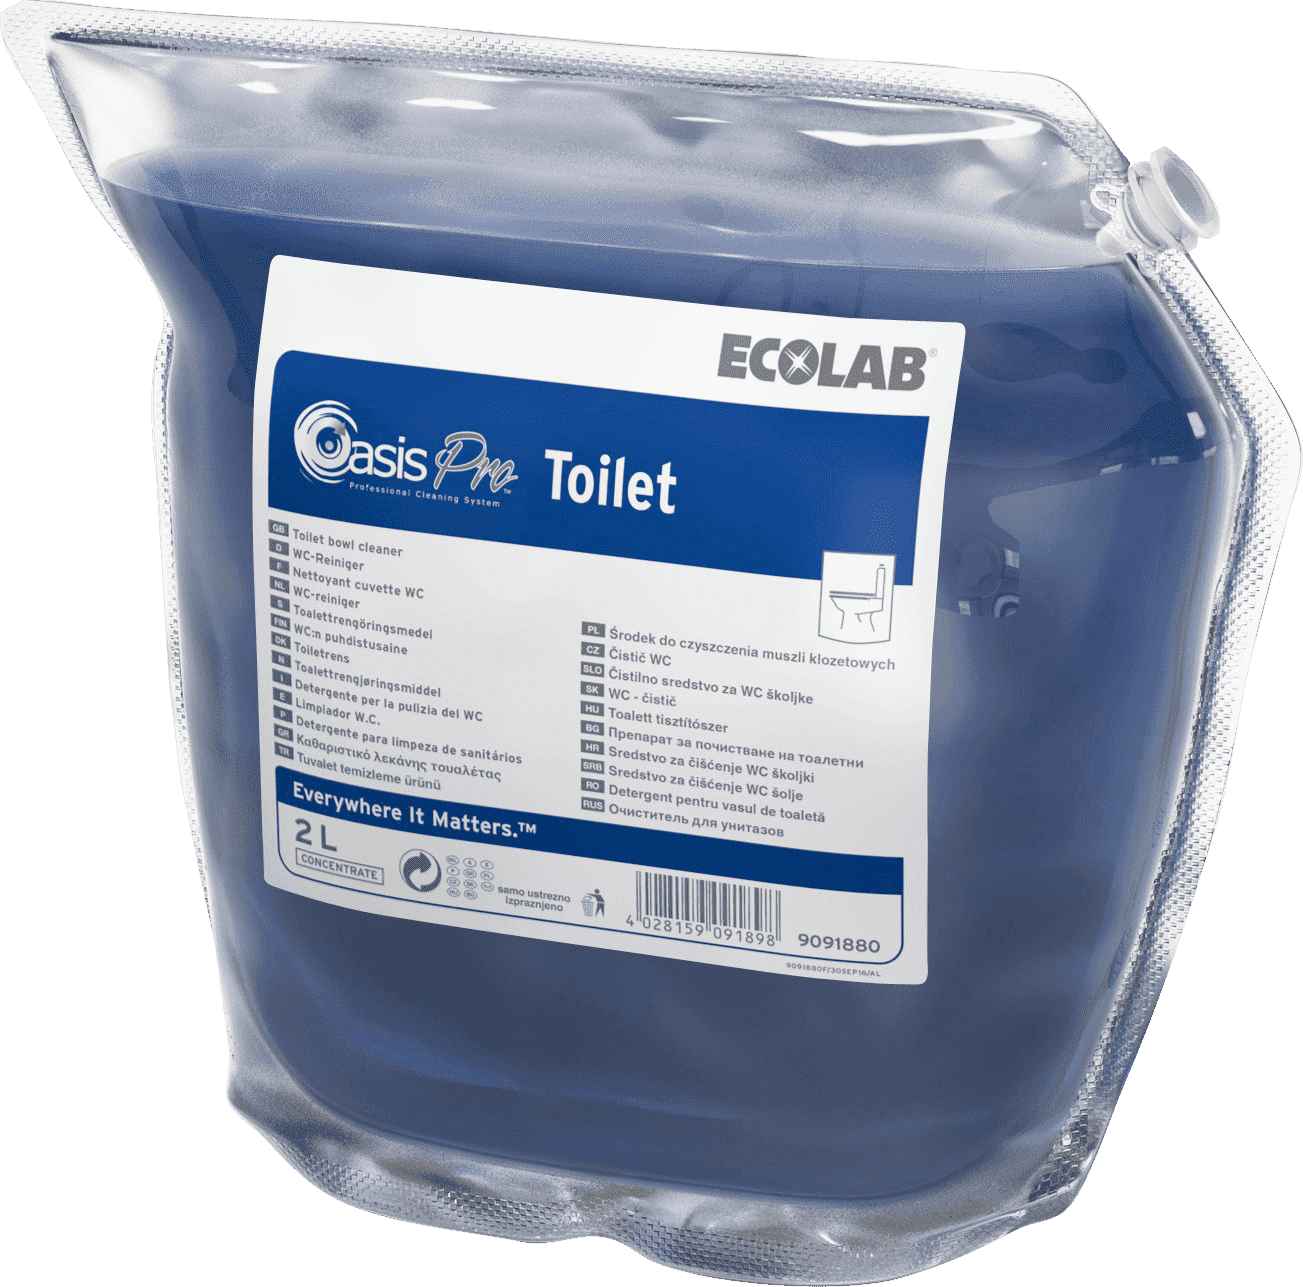 Ecolab Oasis Pro Toilet моющее средство для ежедневной профессиональной уборки в туалетах